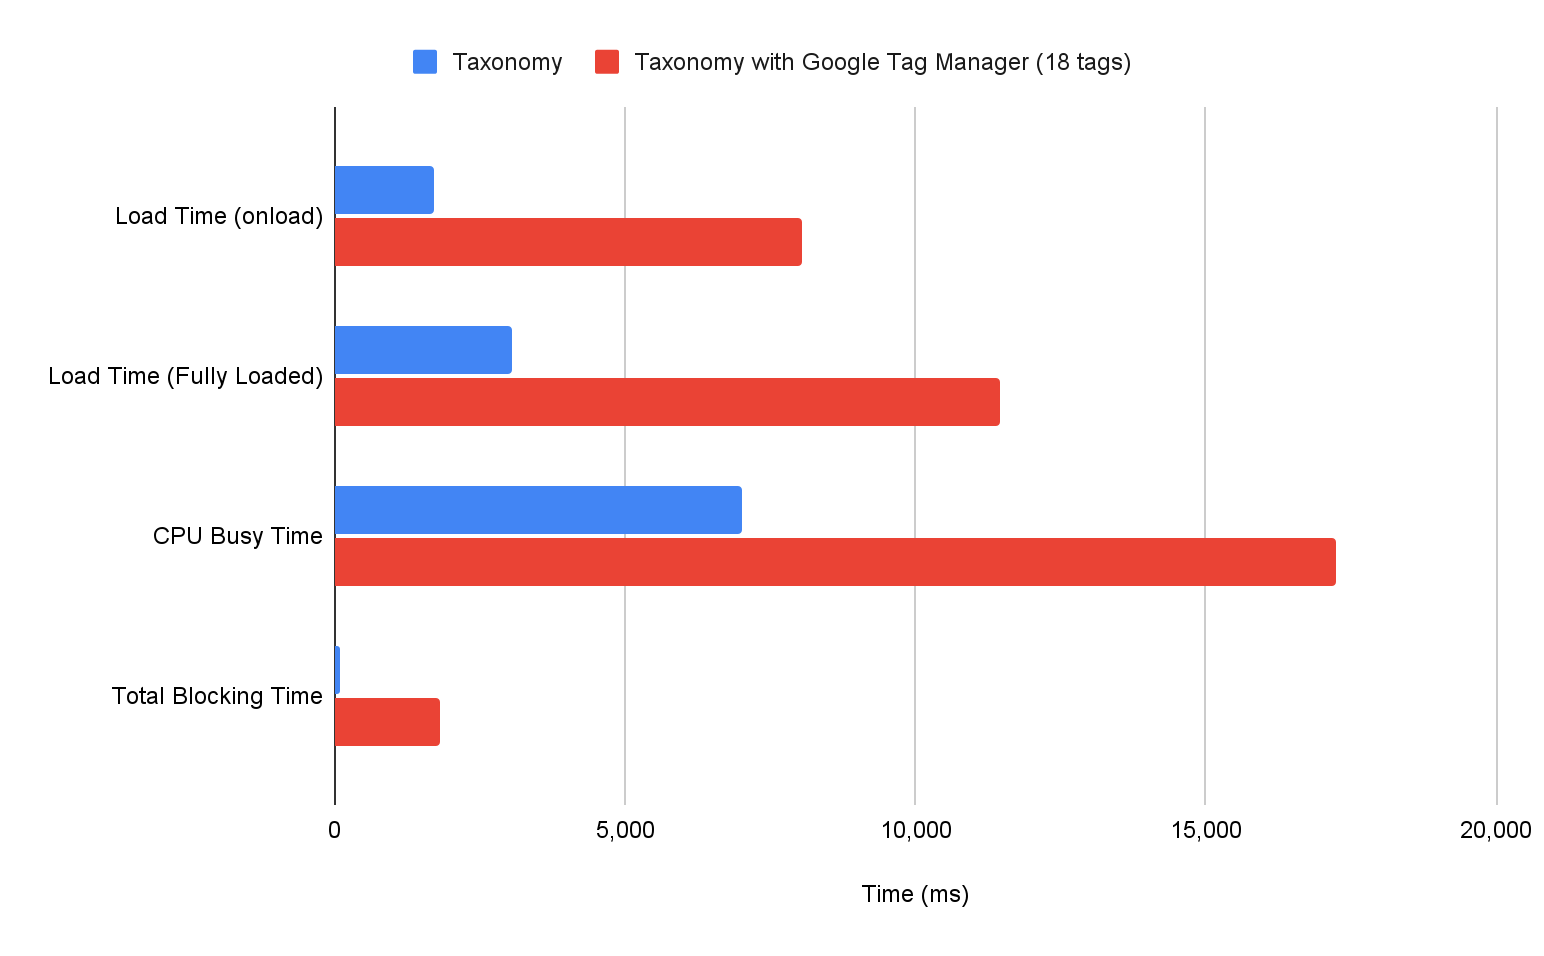 Grafico a barre che mostra la differenza nelle varie metriche dei lab quando un sito viene caricato con e senza Google Tag Manager